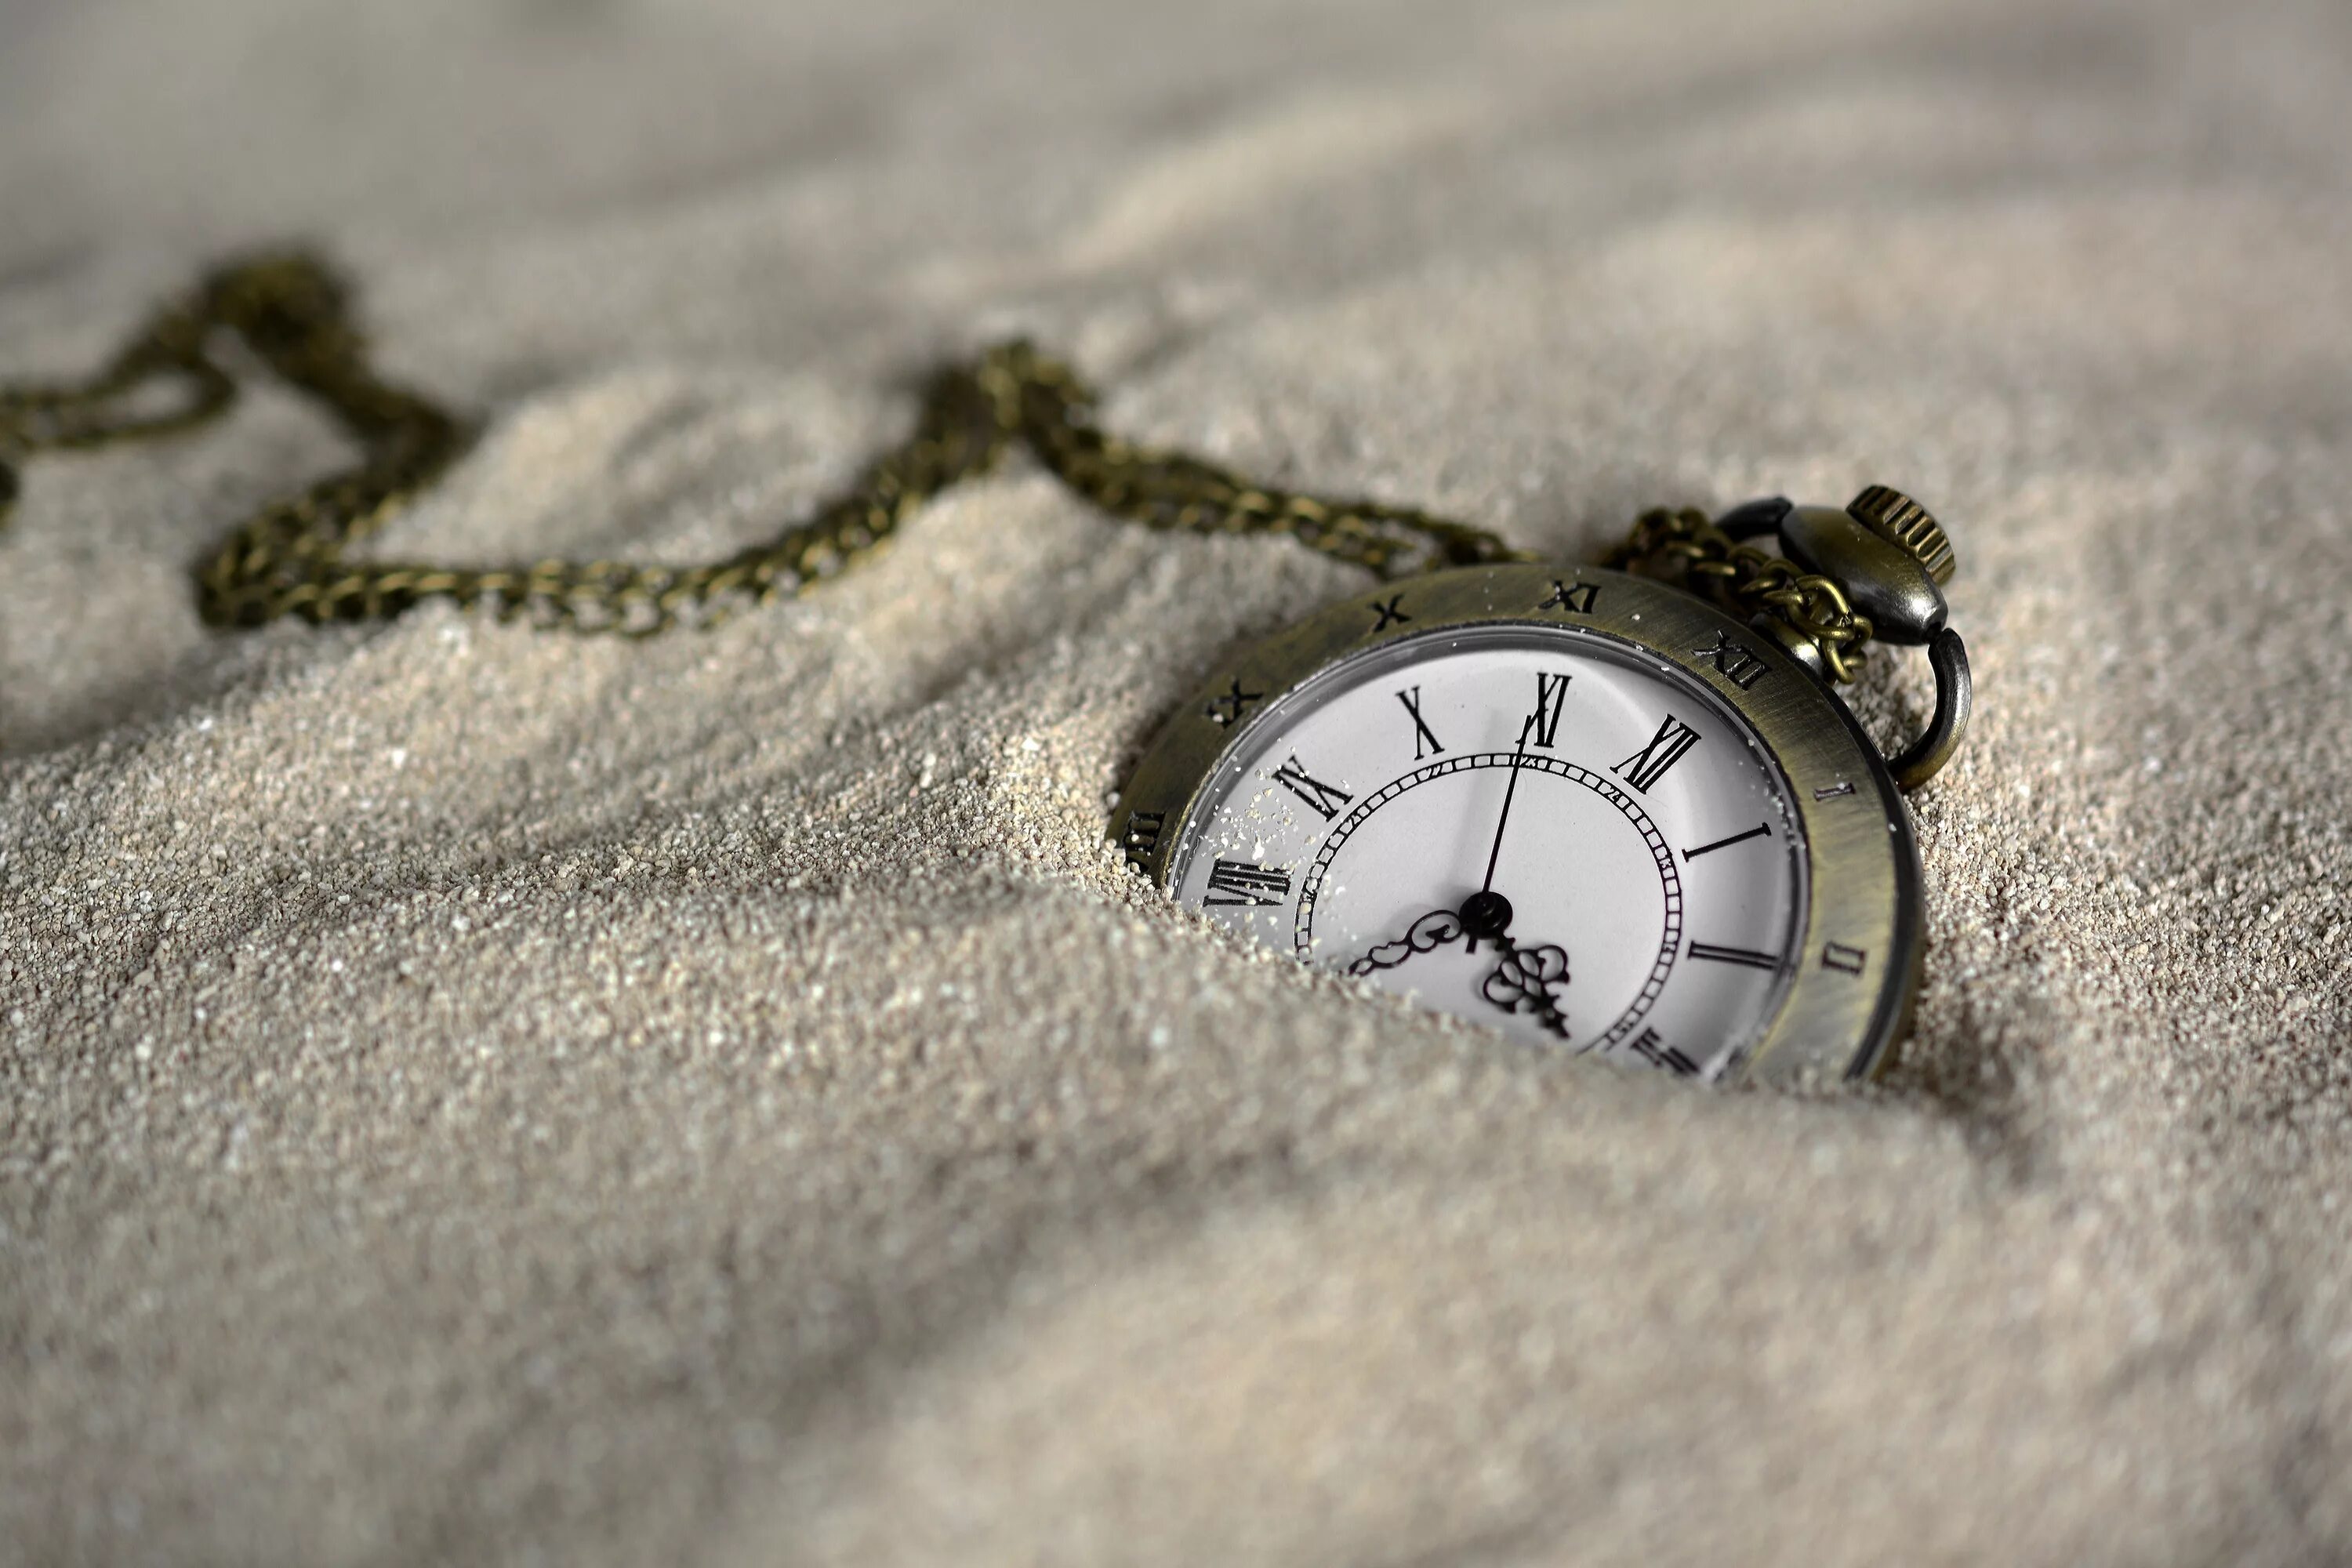 Зайти в часы. Часы. Карманные часы в песке. Часы вечности. Время фото.